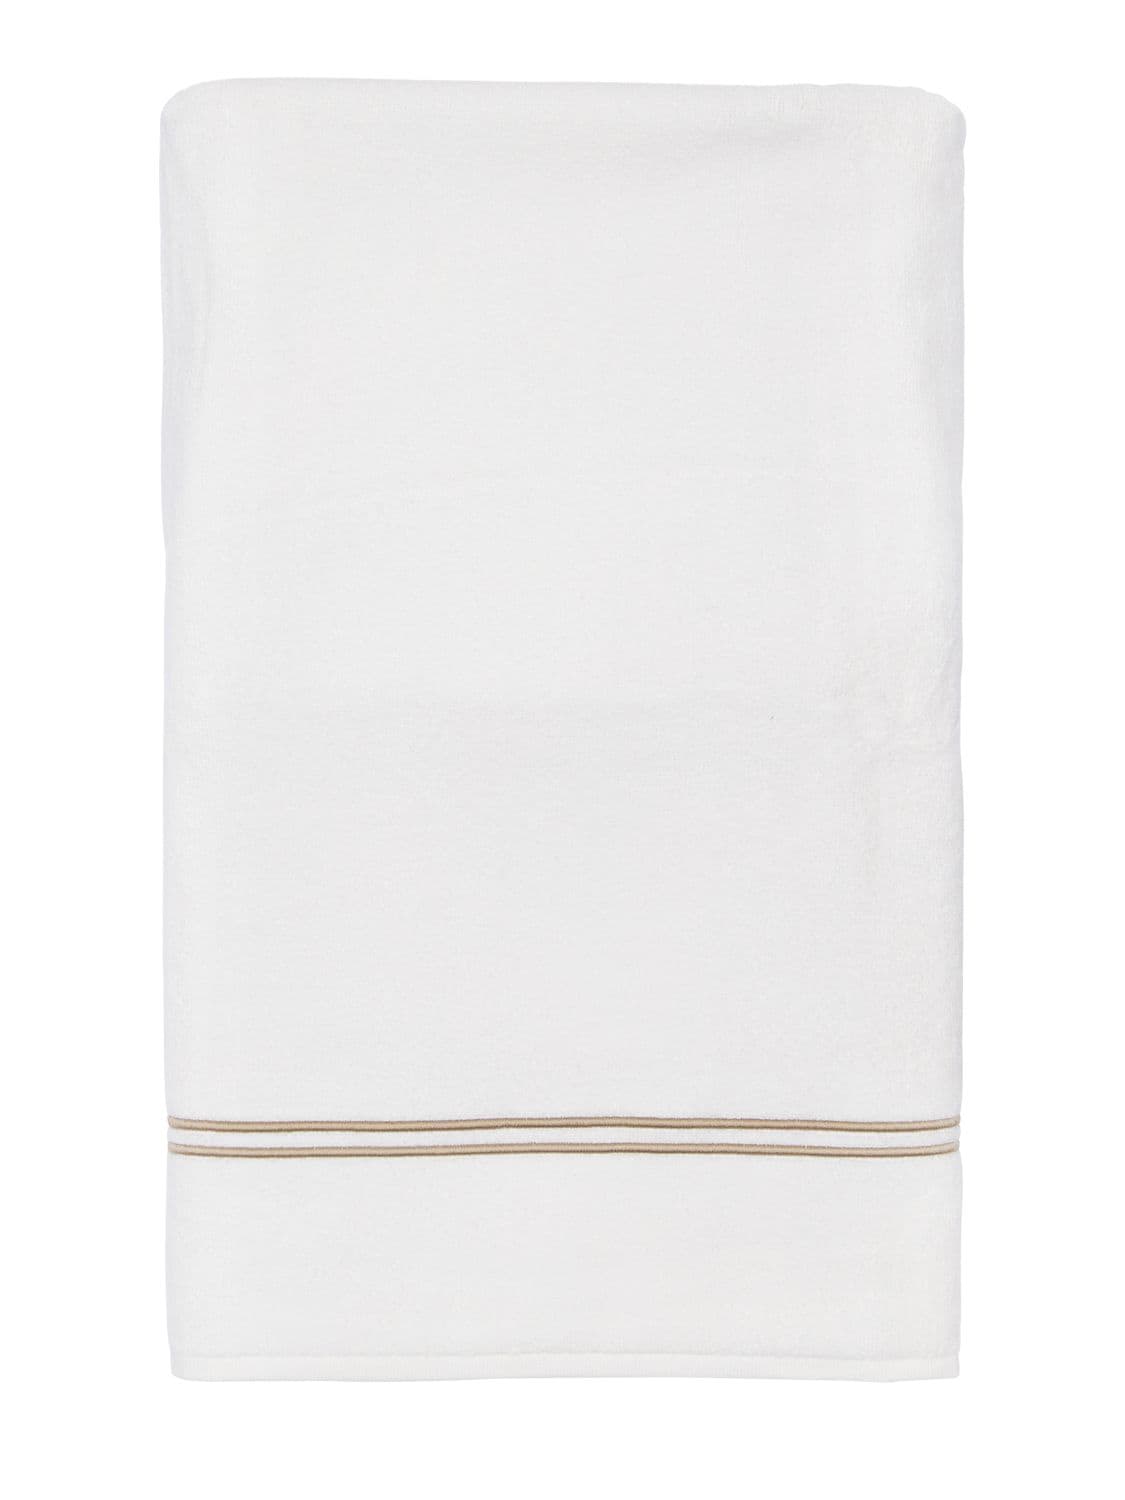 Frette Classic Hand Towel - White Khaki